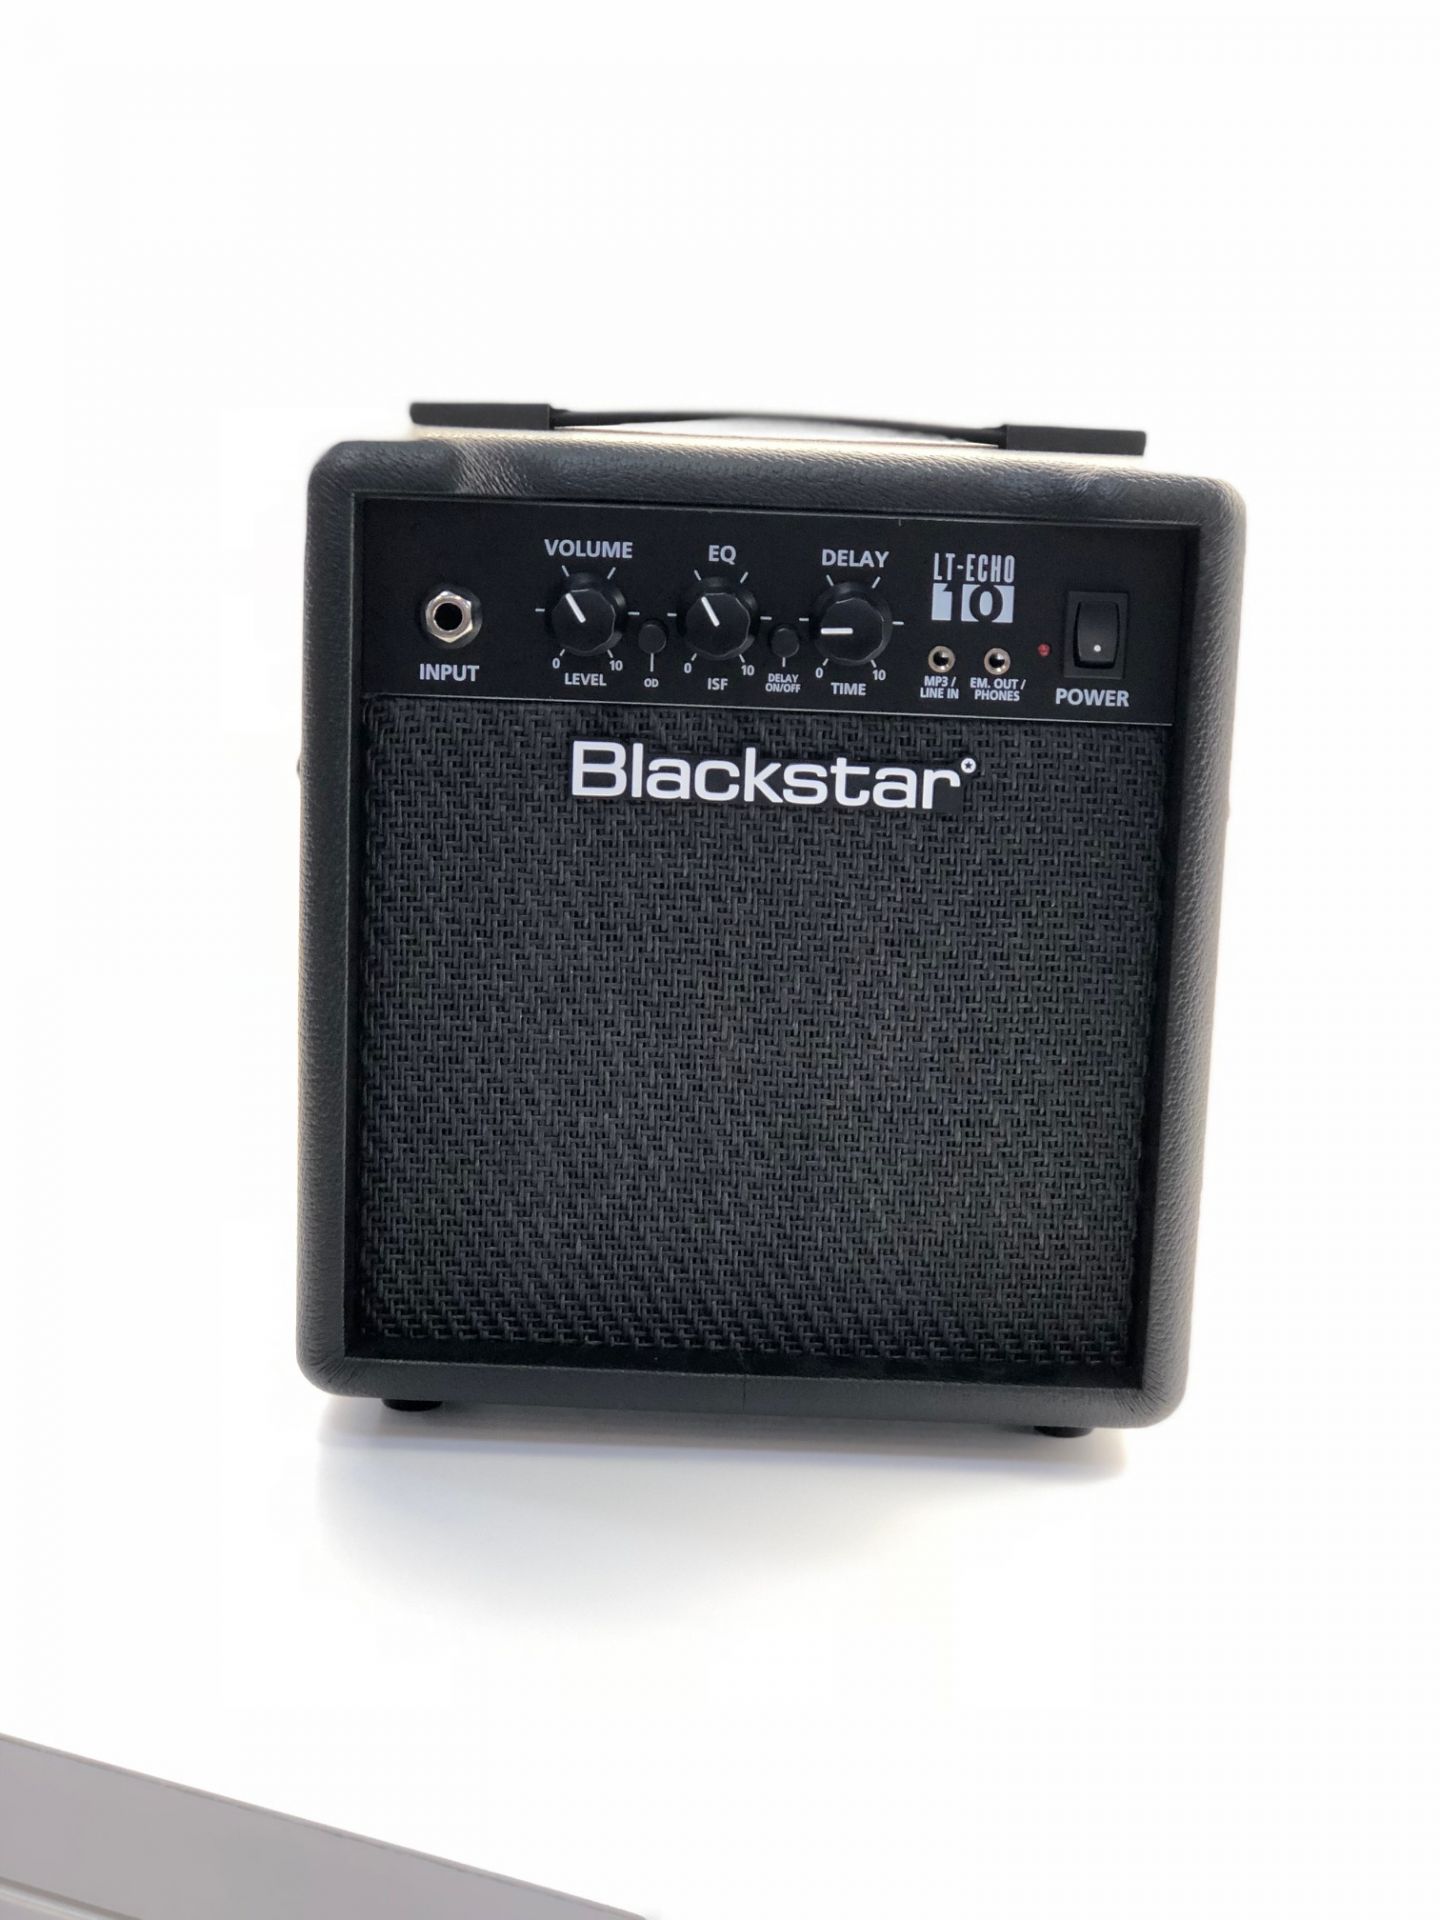 ステレオスピーカー搭載の小型アンプ！Blackstar LT-ECHO 10展示しました！